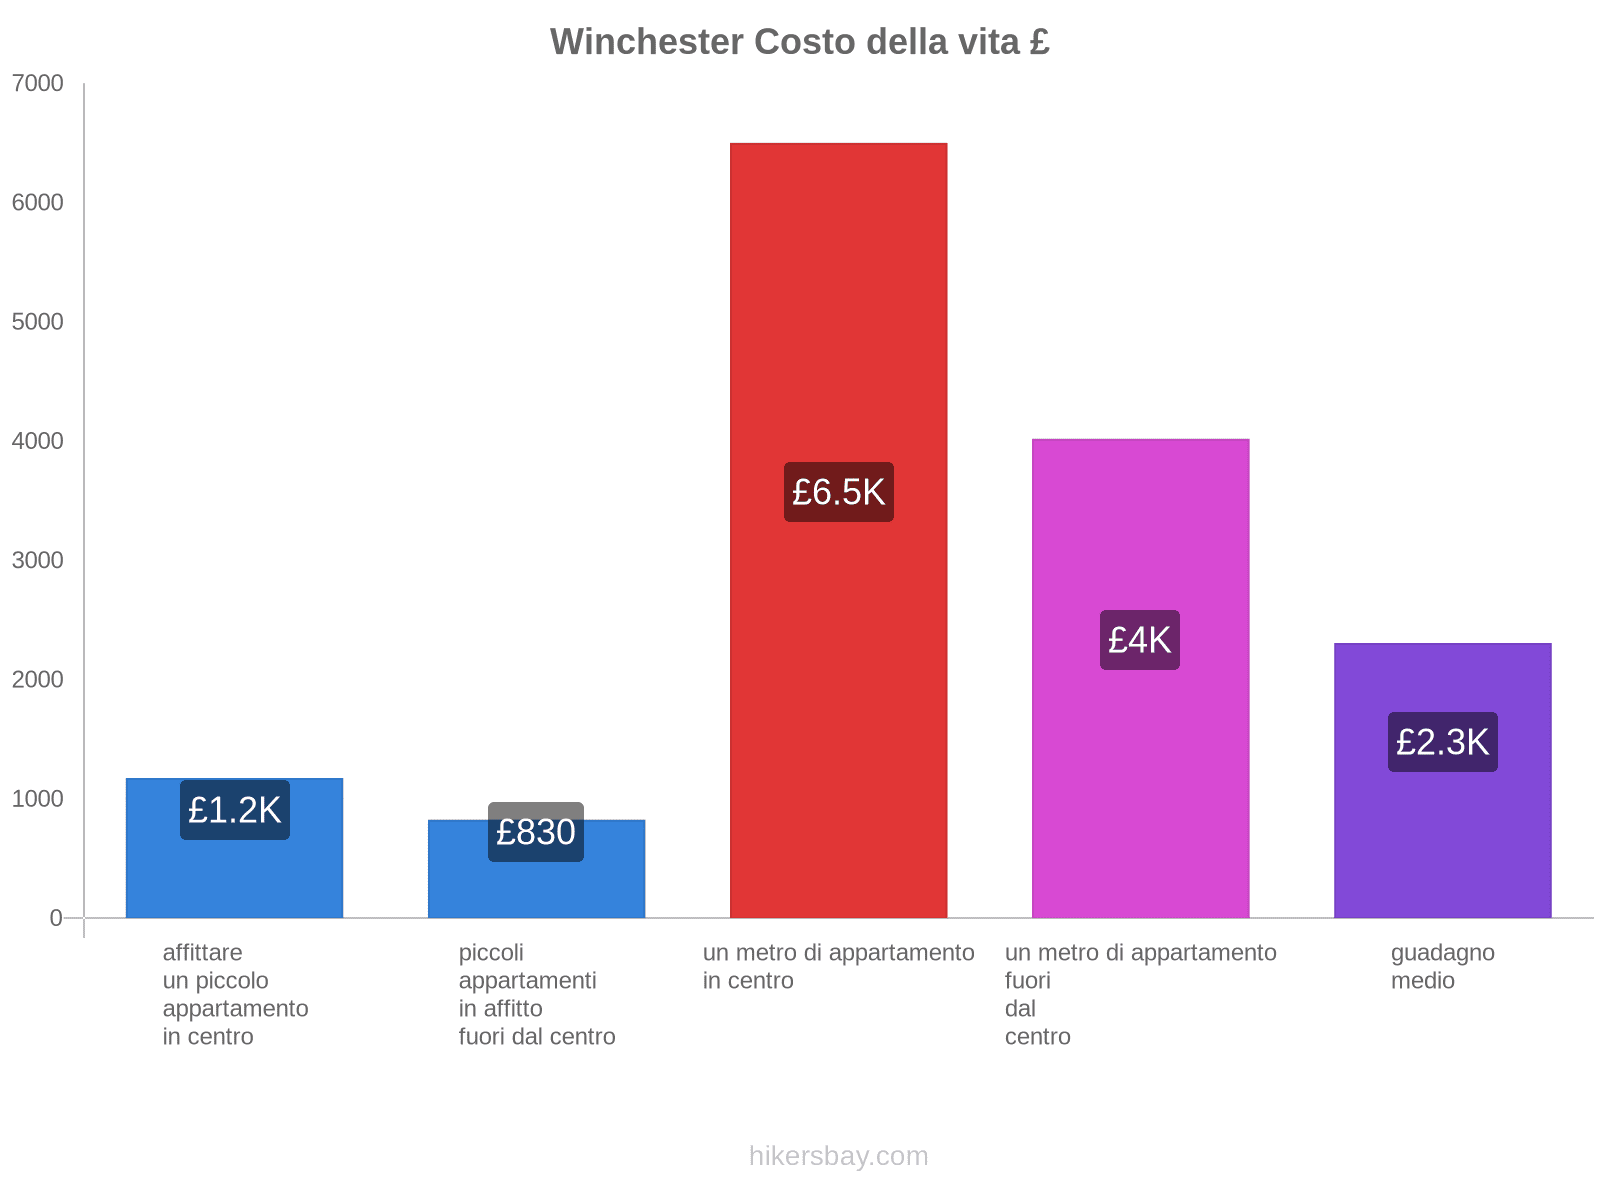 Winchester costo della vita hikersbay.com